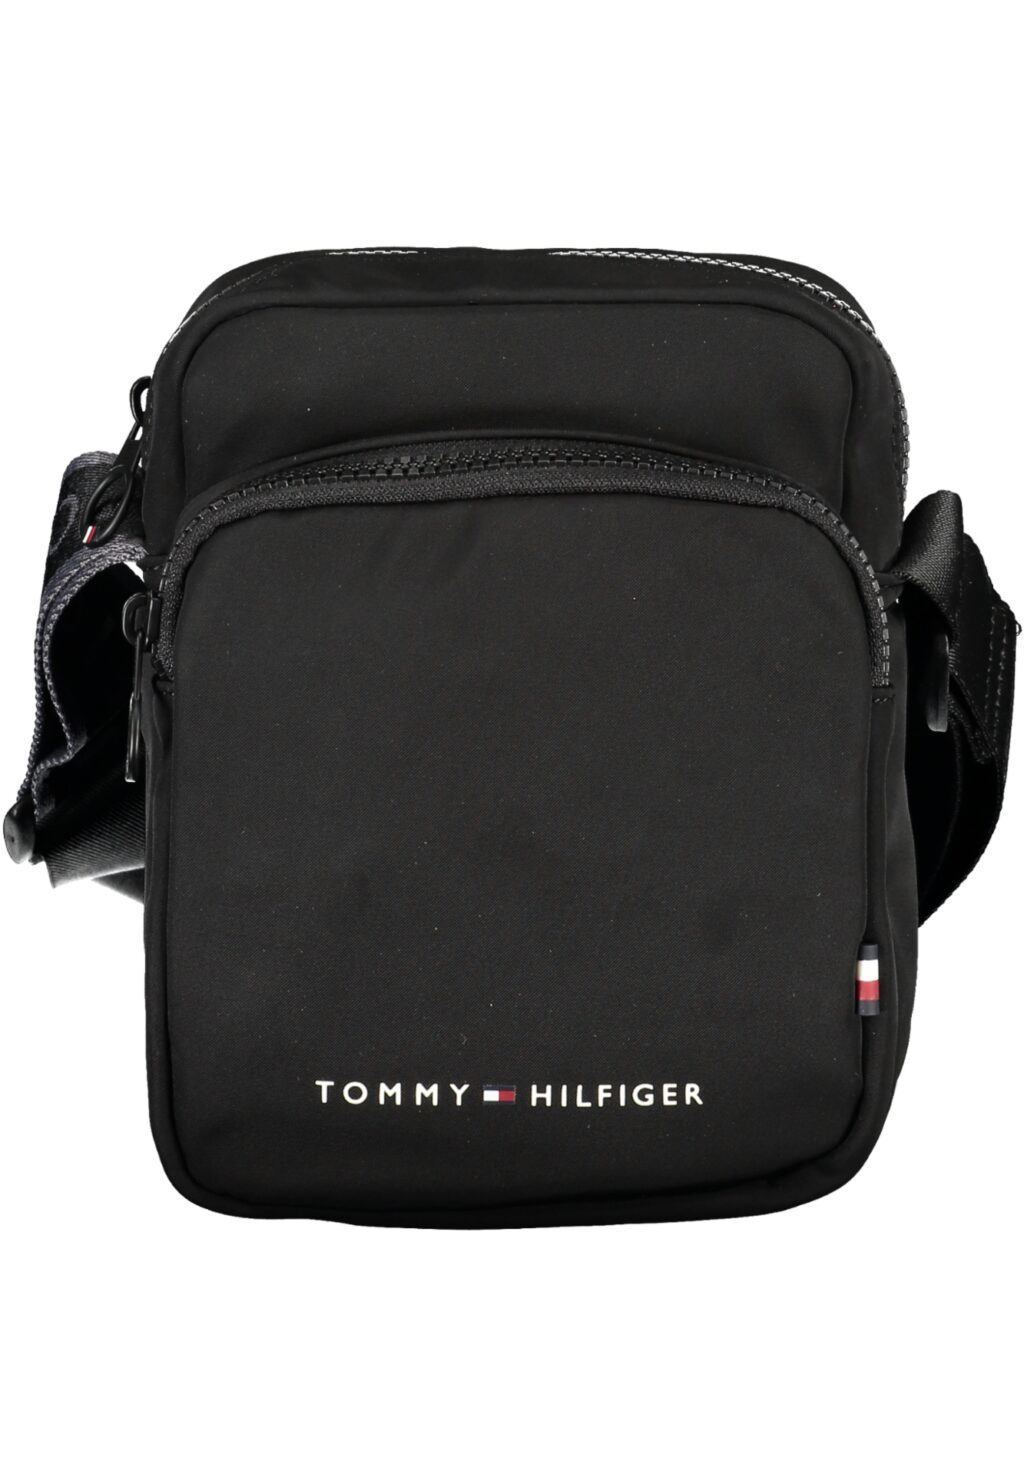 TOMMY HILFIGER MEN'S BLACK SHOULDER BAG AM0AM11554_NEBDS